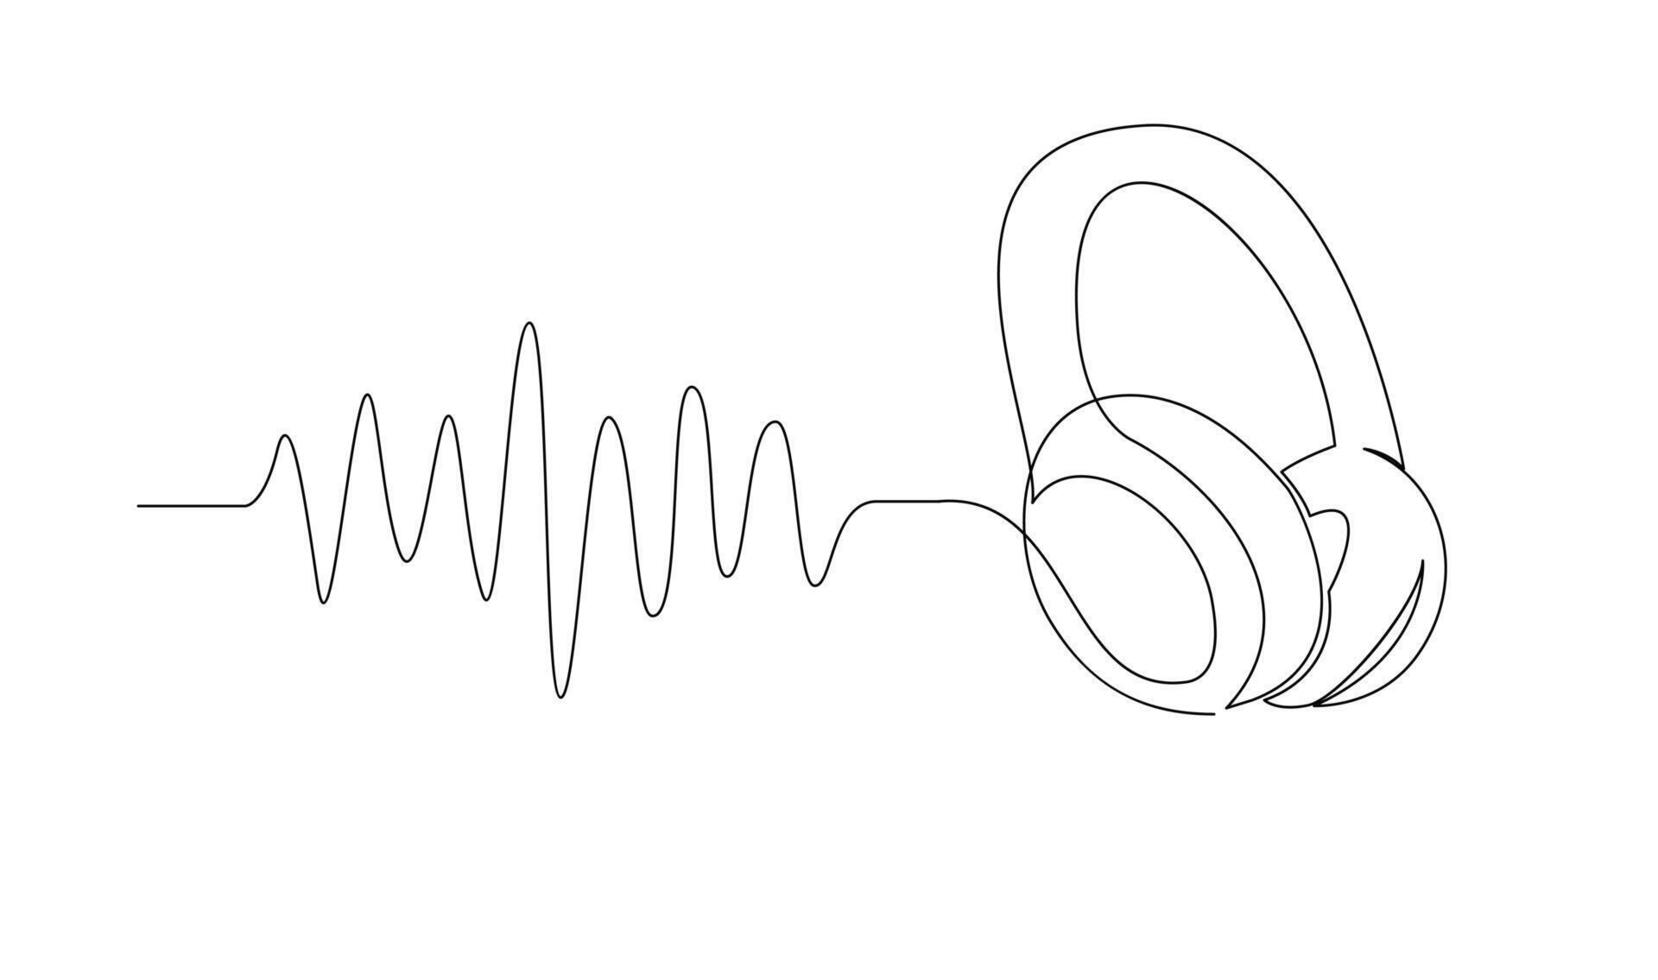 einer Linie Kopfhörer. kontinuierlich Zeichnung von Musik- Gadget und Notiz. vektor